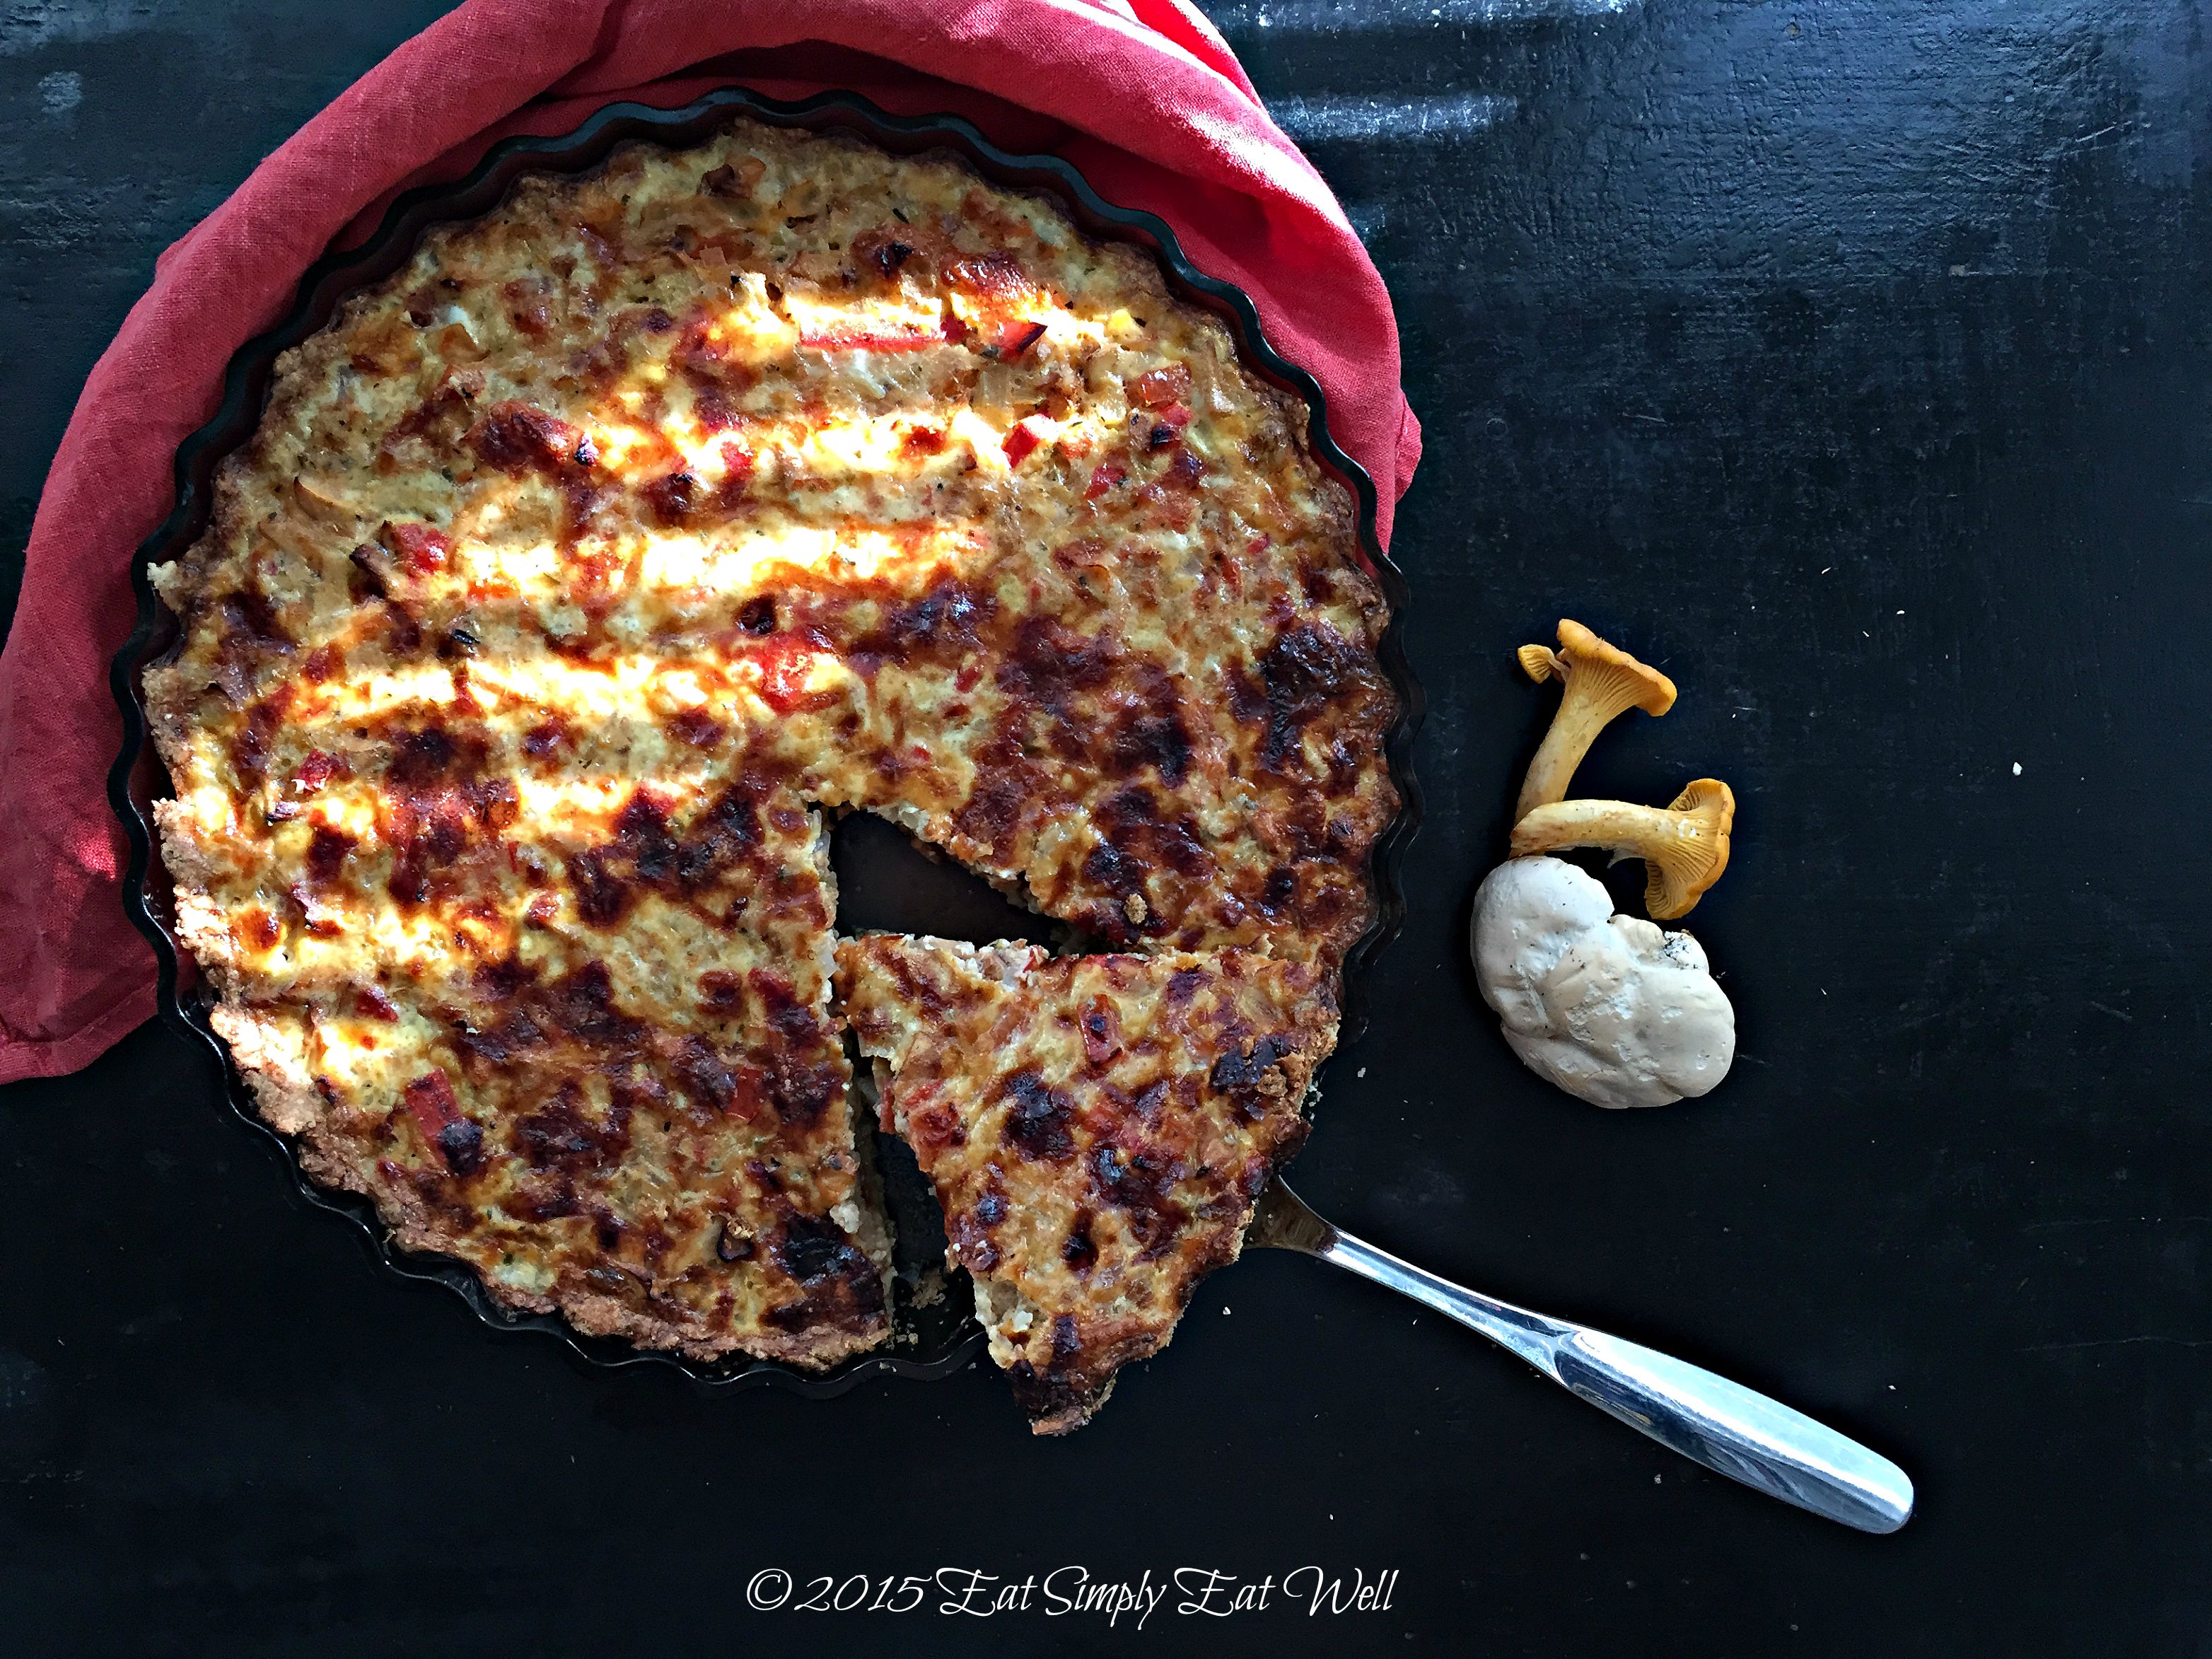 Pie Maker Mushroom Pizza - Real Recipes from Mums